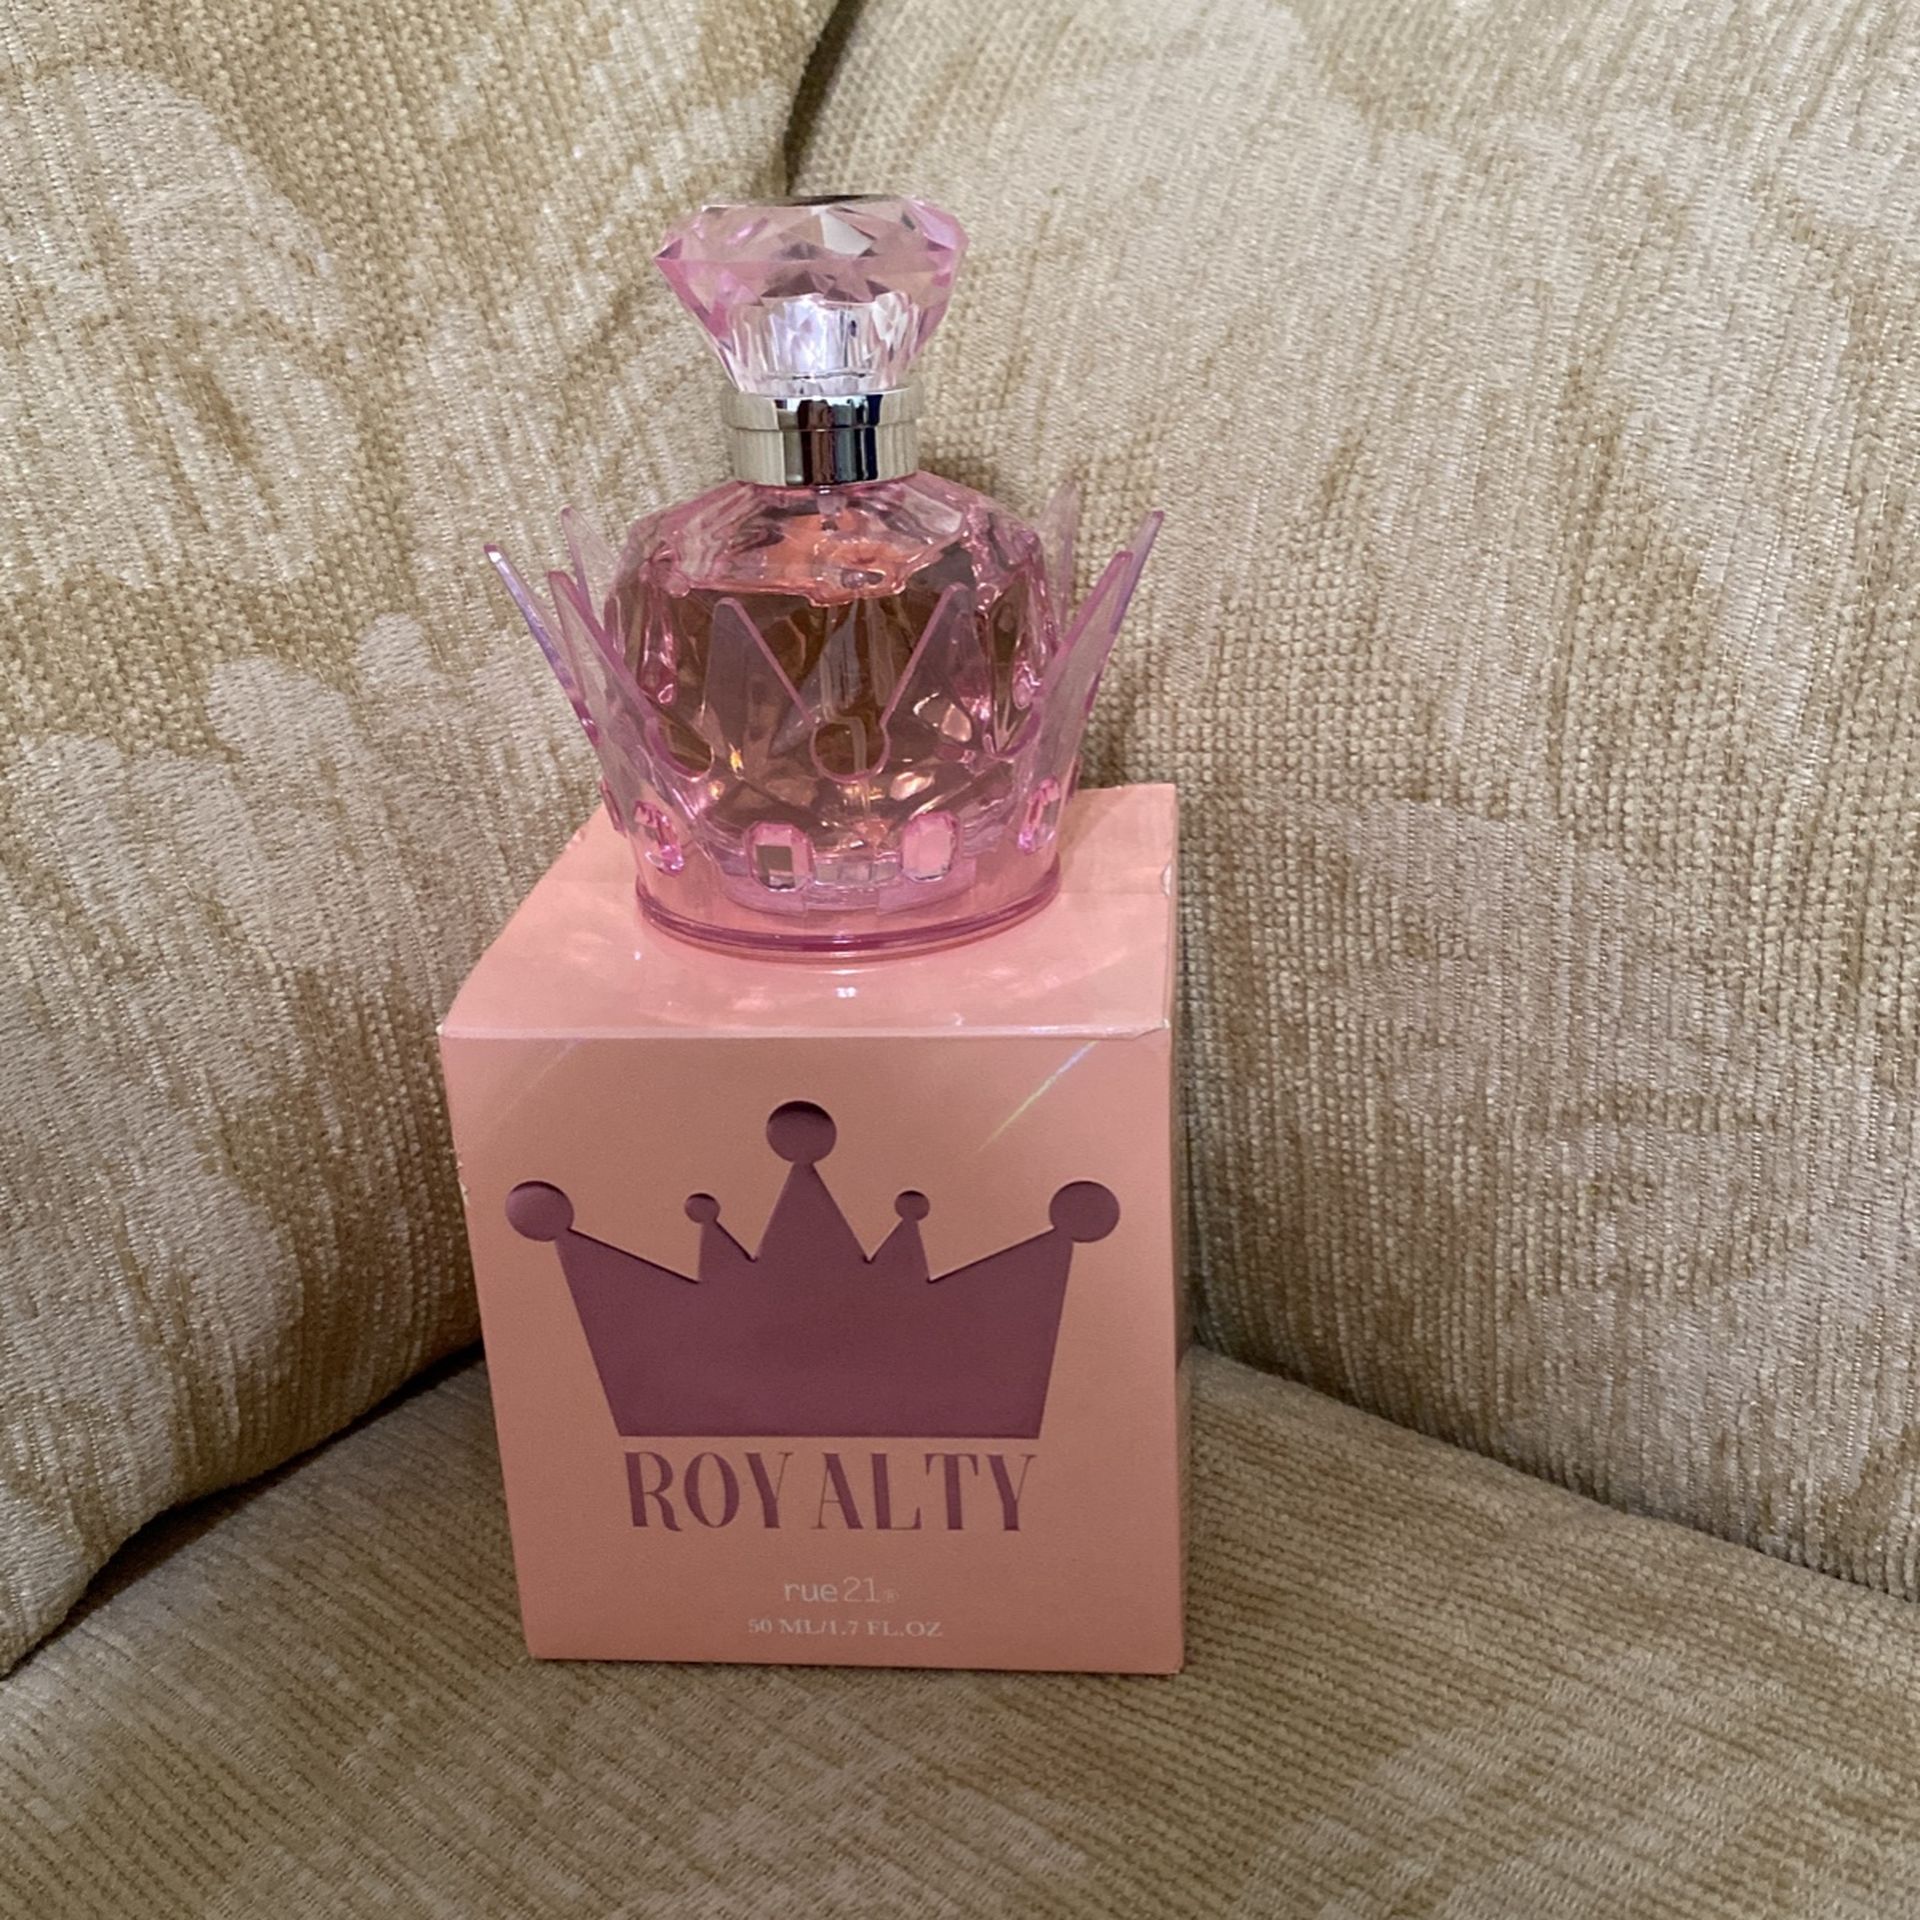 NIB Rue21 Royalty Women’s Perfume 1.7 oz.